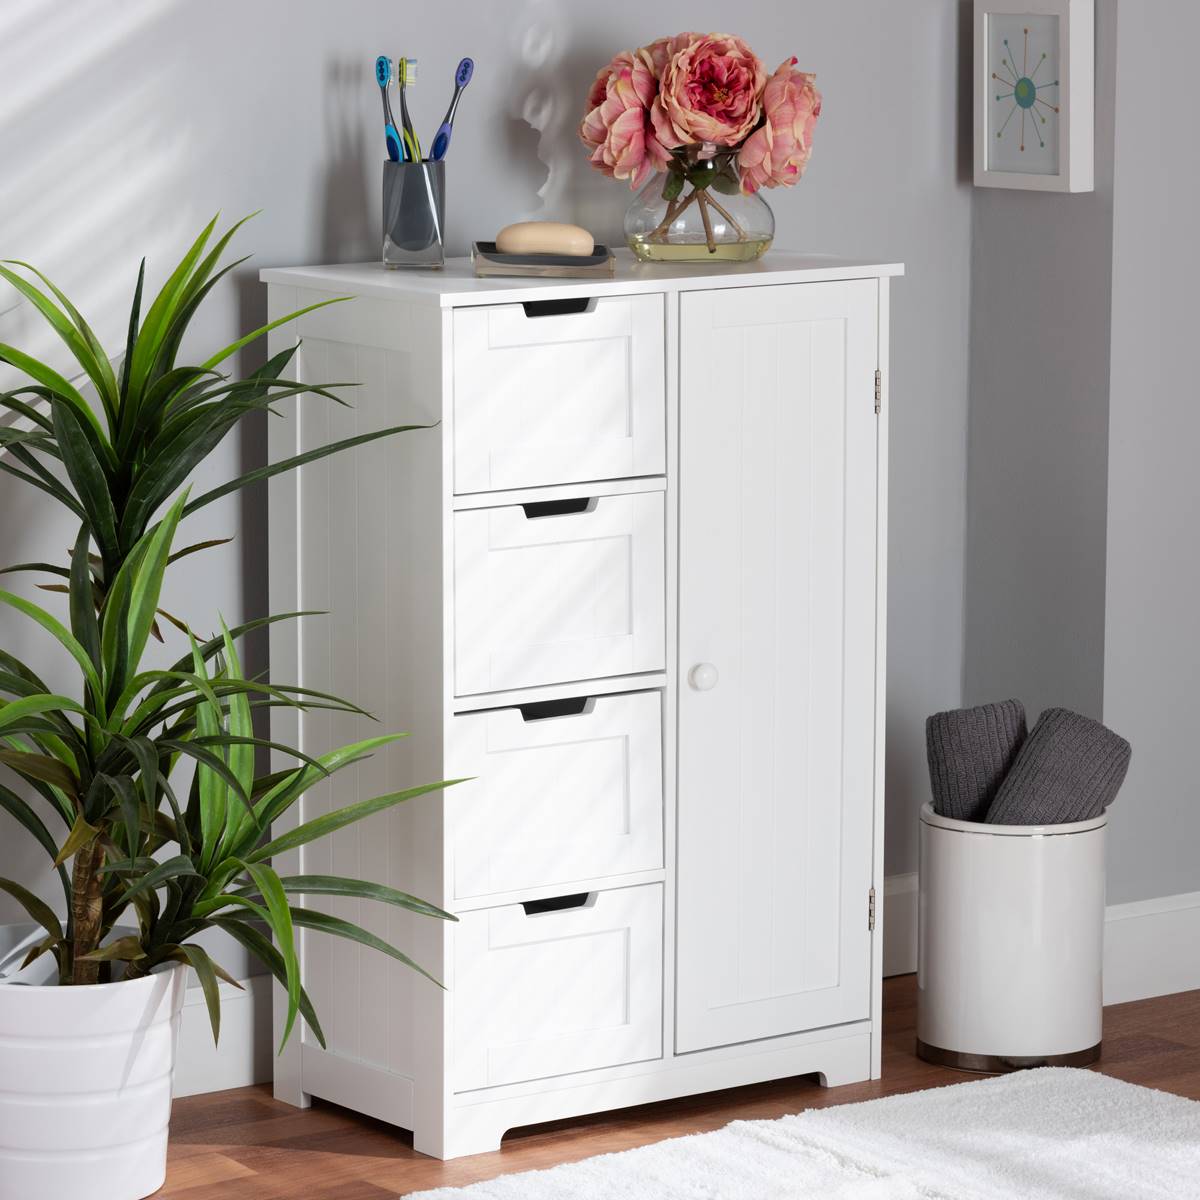 Baxton Studio Bauer White Wood 4-Drawer Bathroom Storage Cabinet